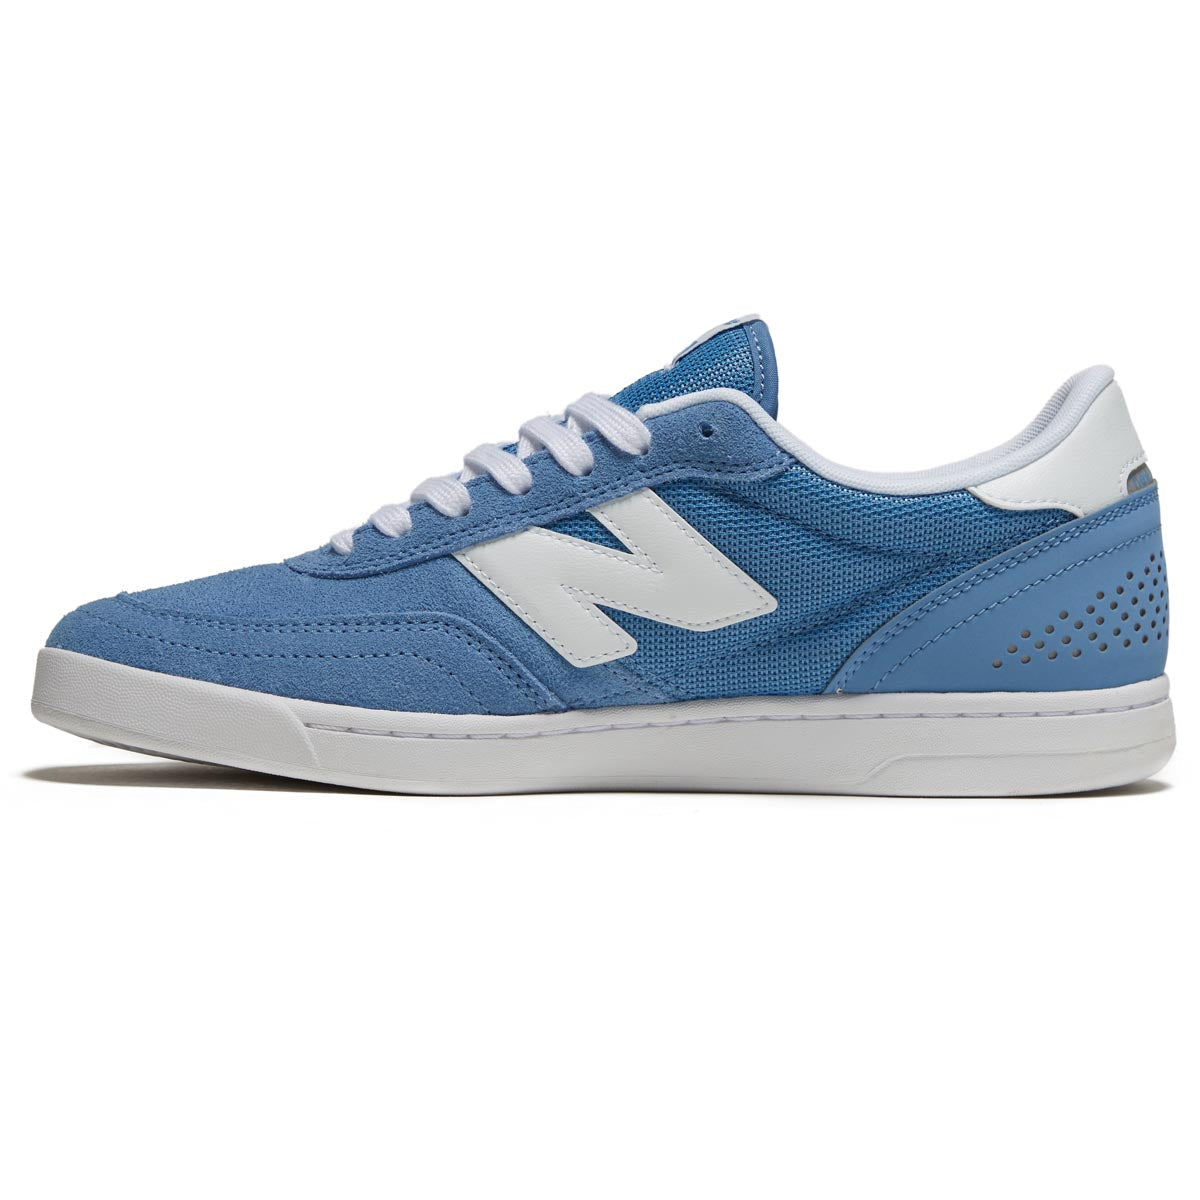 New Balance 440 V2 Shoes - Blue image 2